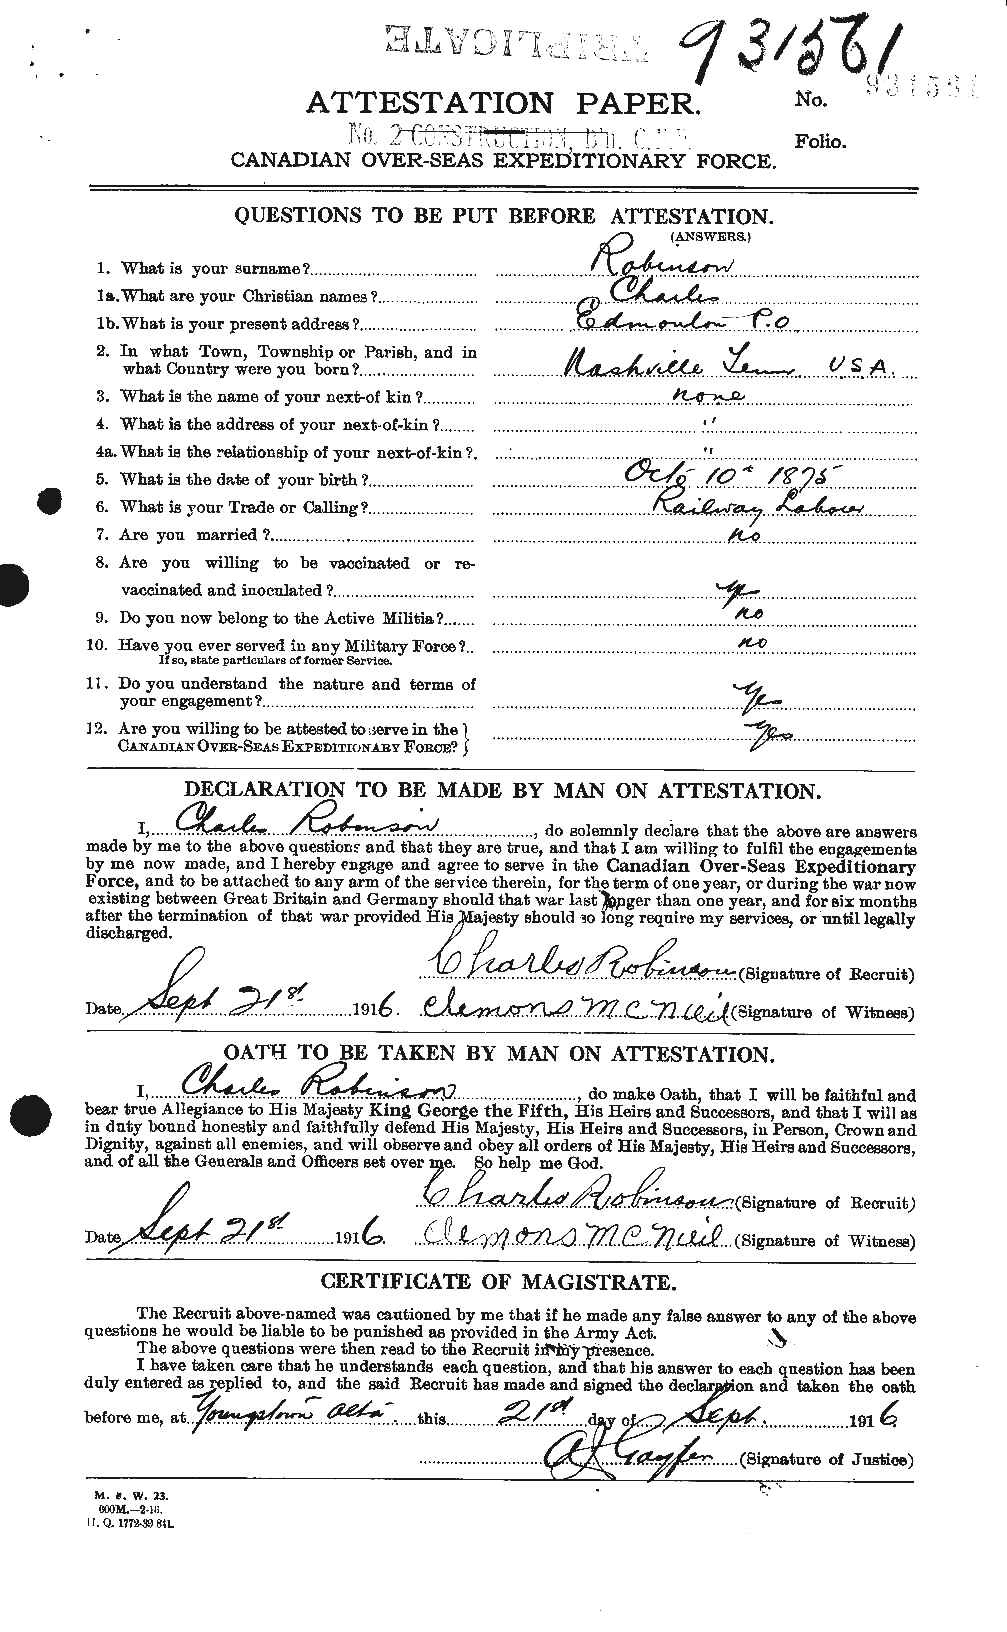 Dossiers du Personnel de la Première Guerre mondiale - CEC 607050a